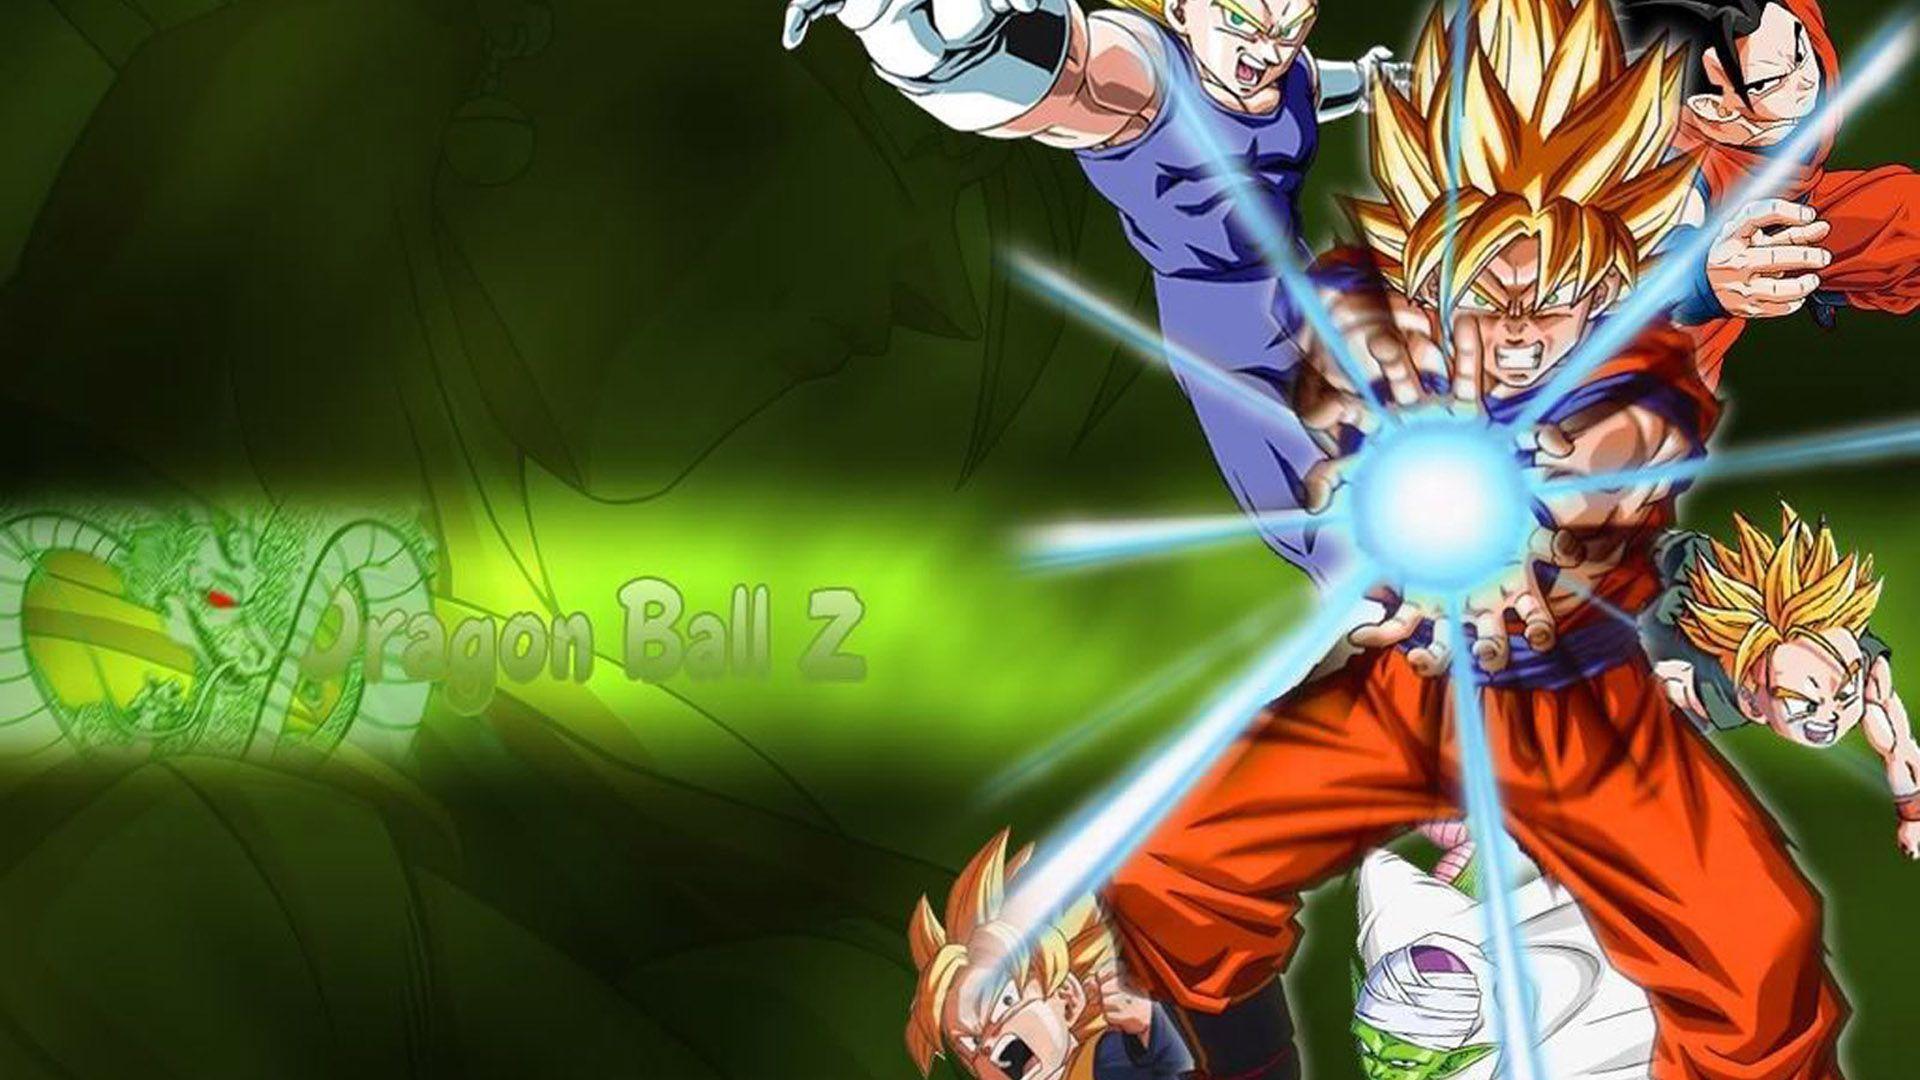 SSJ Gogeta Wallpaper Group. HD Wallpaper. Goku vs